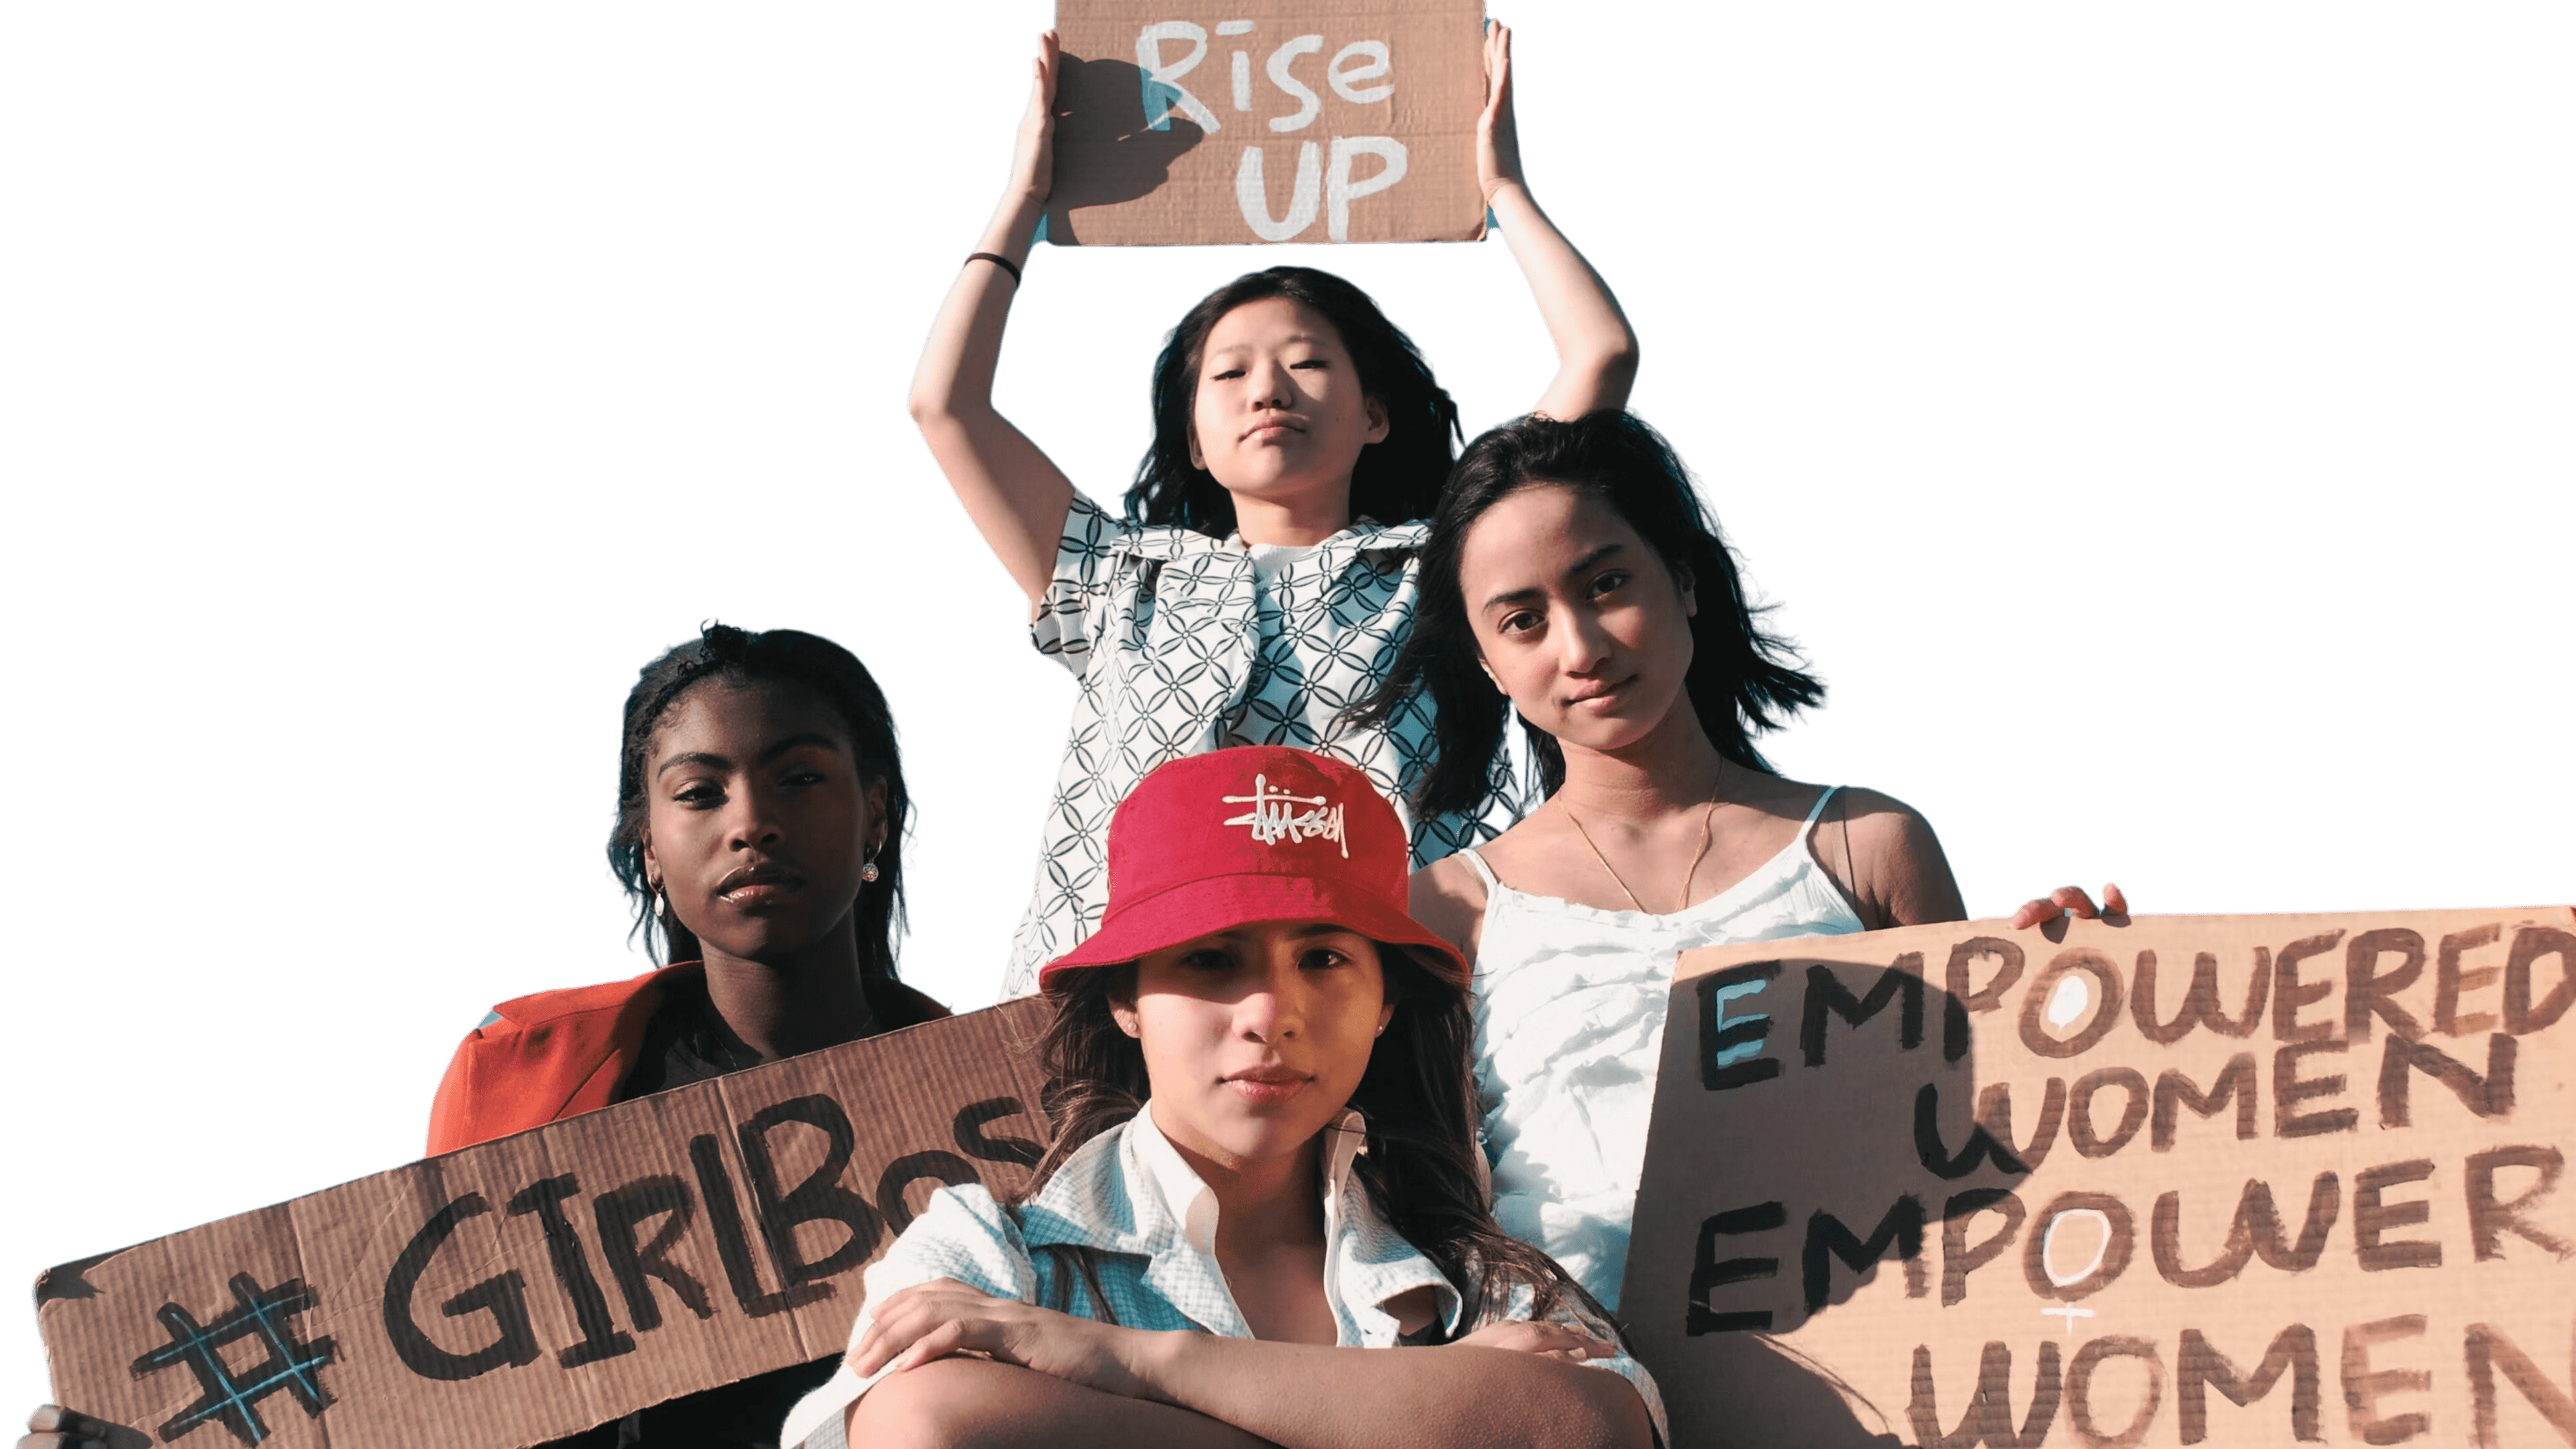 Junge Mädchen halten Schilder beschriftet mit “Rise up”, “#girlboss”, und “Empowered Women Empower Women”